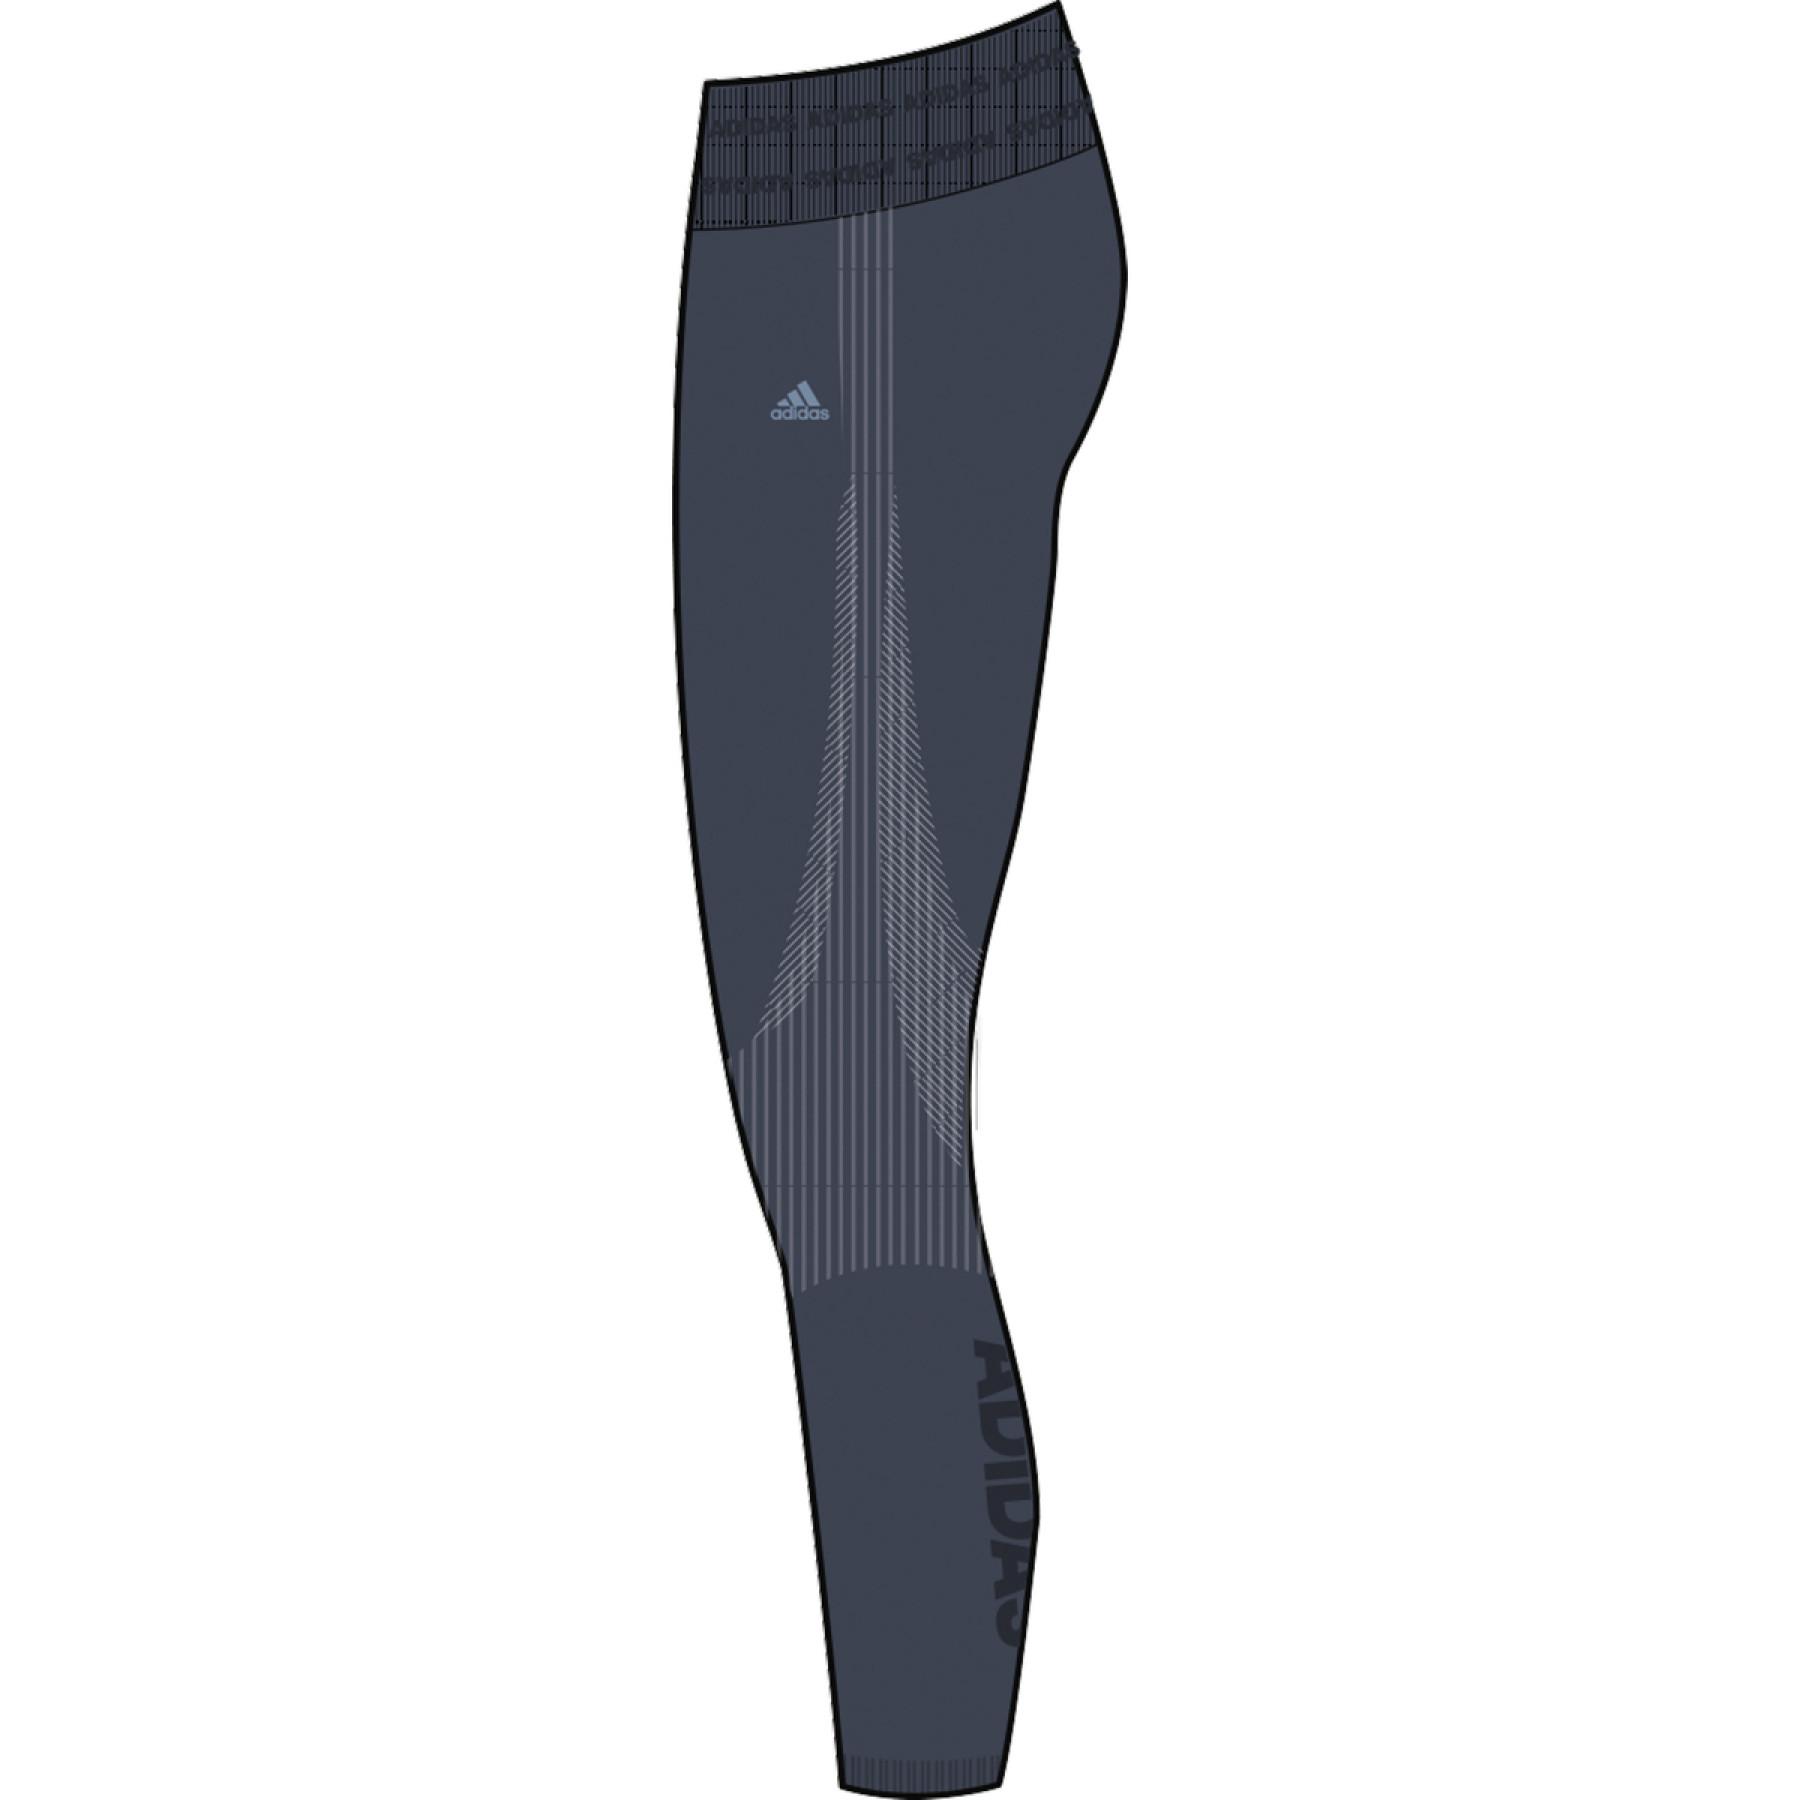 Pernas femininas de cintura alta adidas Training Branded Aeroknit 7/8